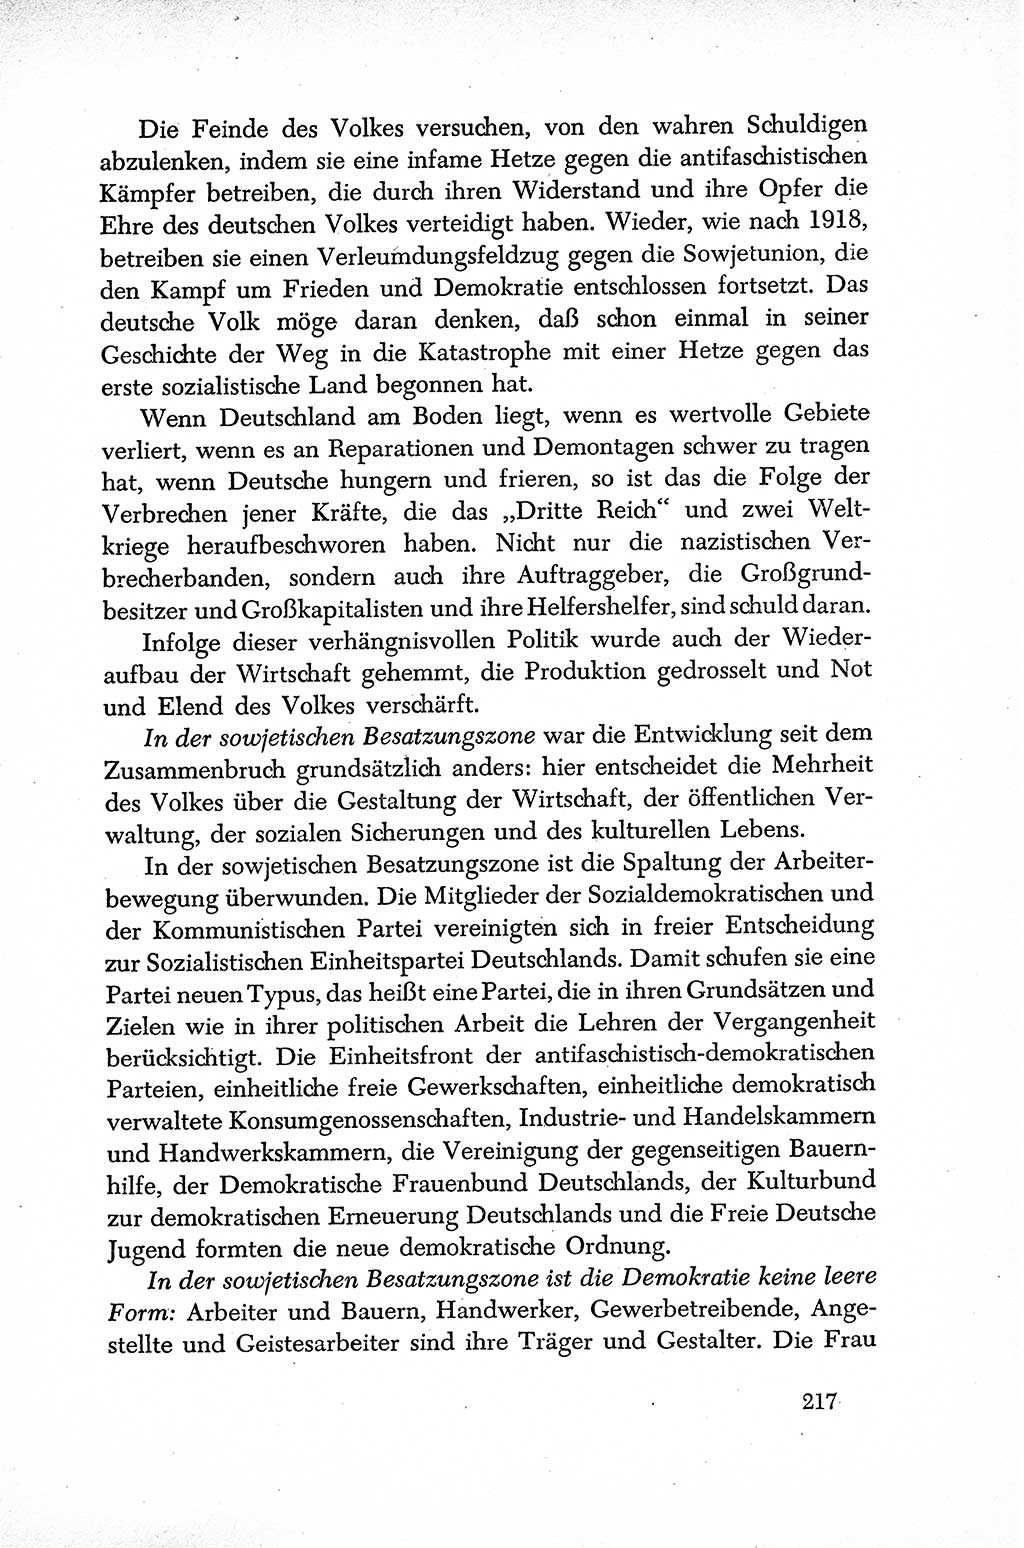 Dokumente der Sozialistischen Einheitspartei Deutschlands (SED) [Sowjetische Besatzungszone (SBZ) Deutschlands] 1946-1948, Seite 217 (Dok. SED SBZ Dtl. 1946-1948, S. 217)